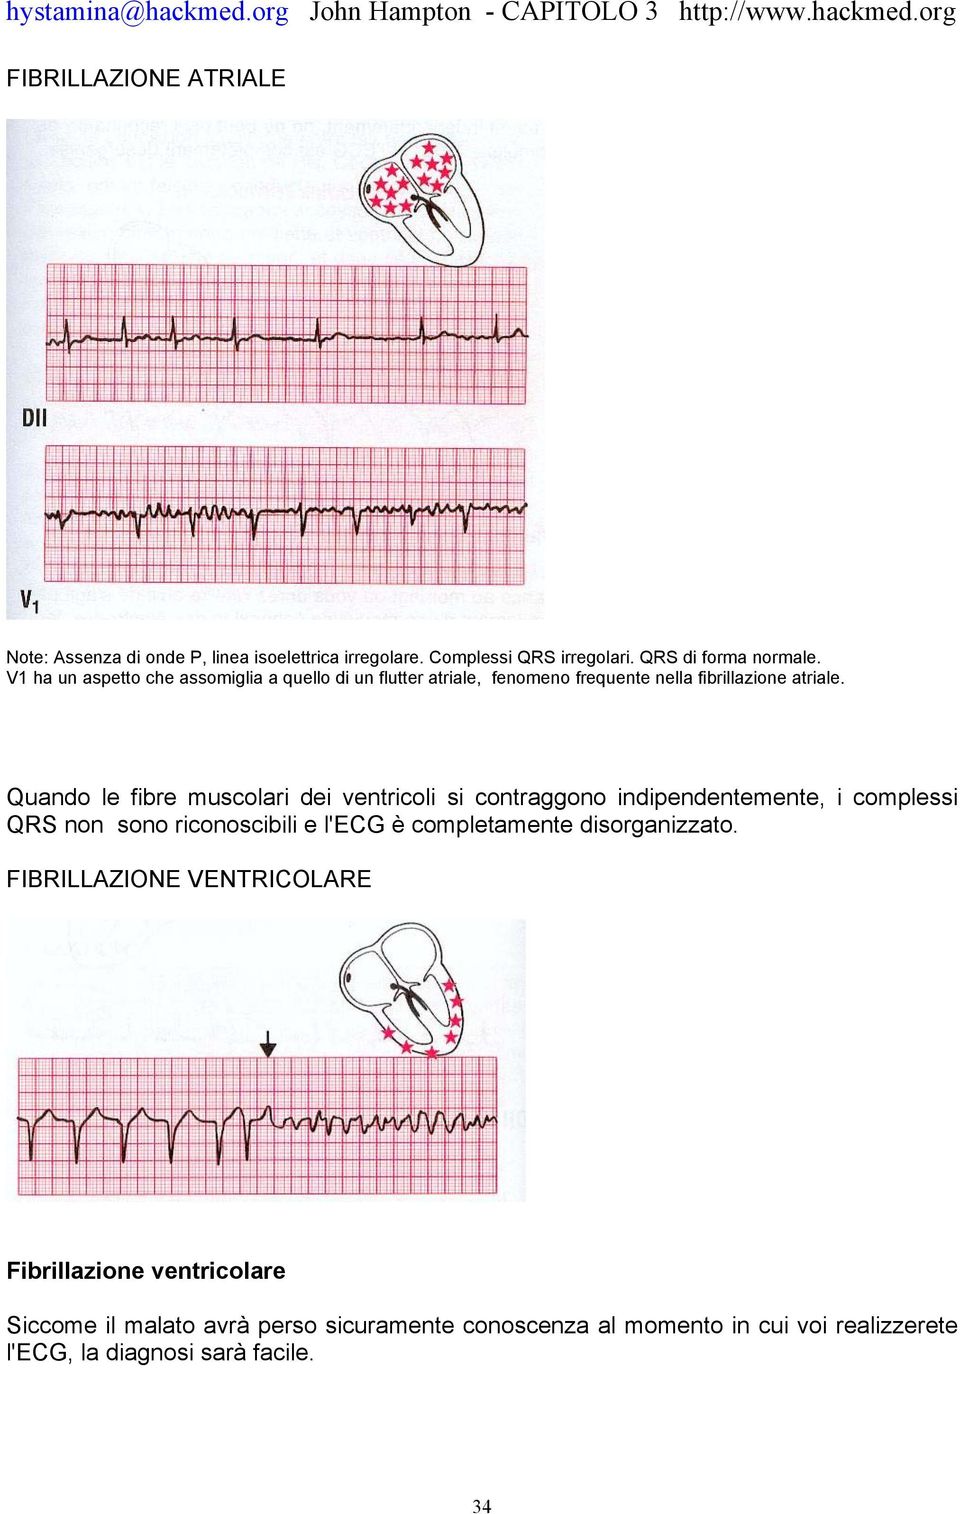 Quando le fibre muscolari dei ventricoli si contraggono indipendentemente, i complessi QRS non sono riconoscibili e l'ecg è completamente